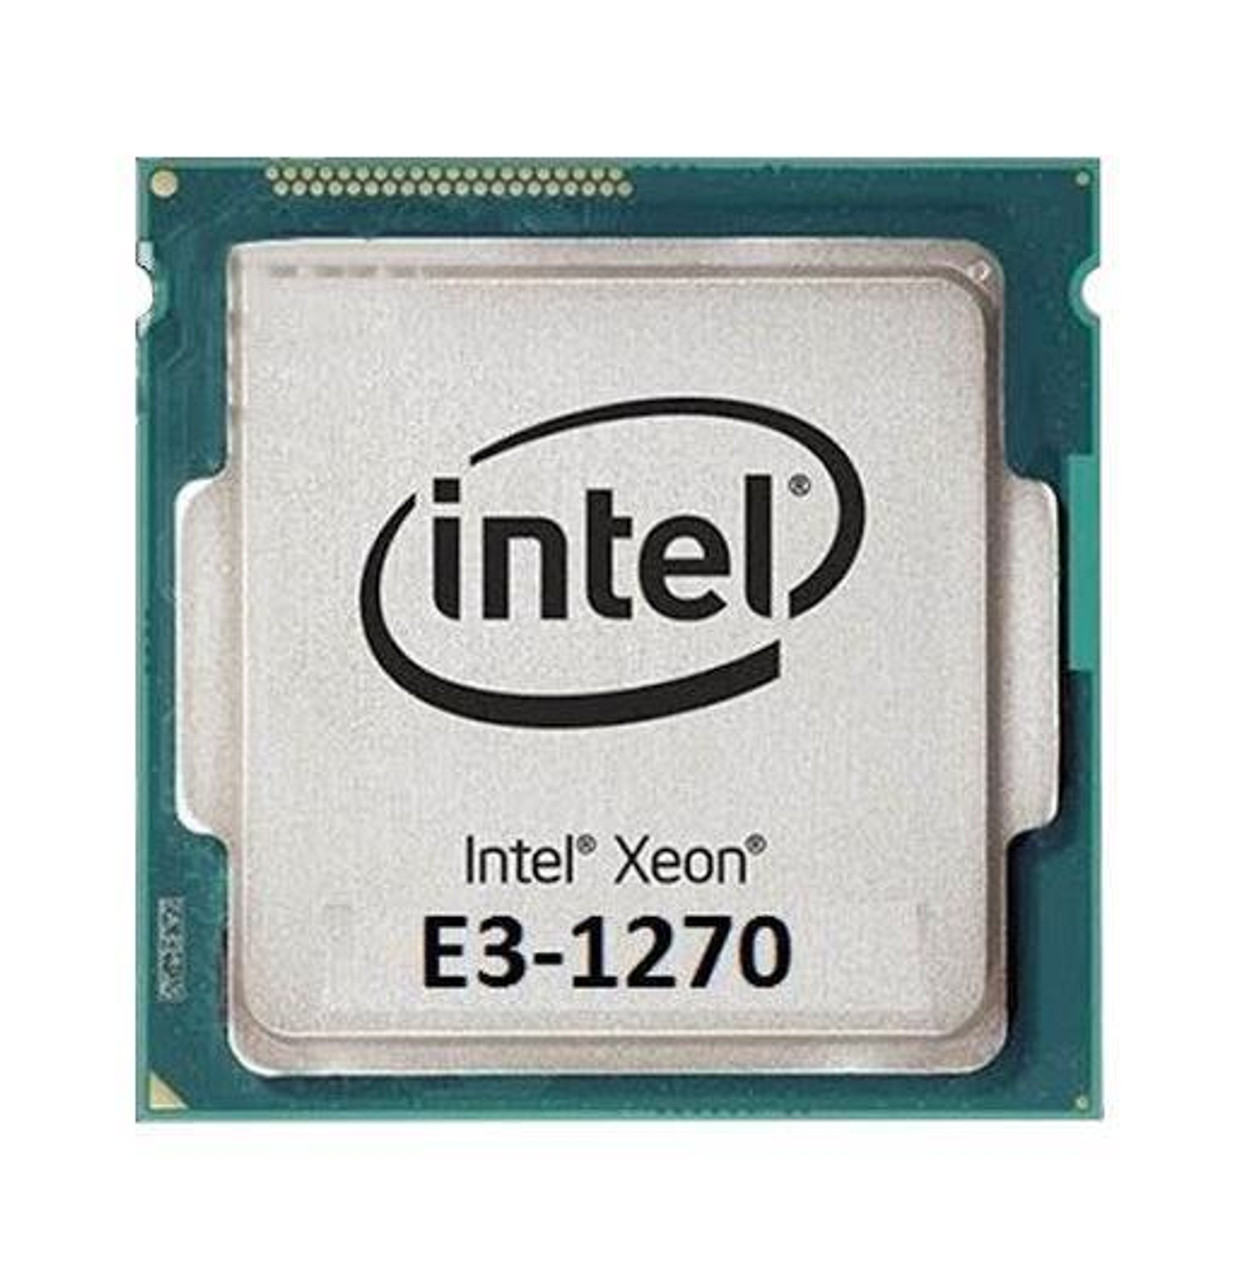 Fujitsu 3.40GHz 5.00GT/s DMI 8MB L3 Cache Intel Xeon E3-1270 Quad-Core Processor Upgrade